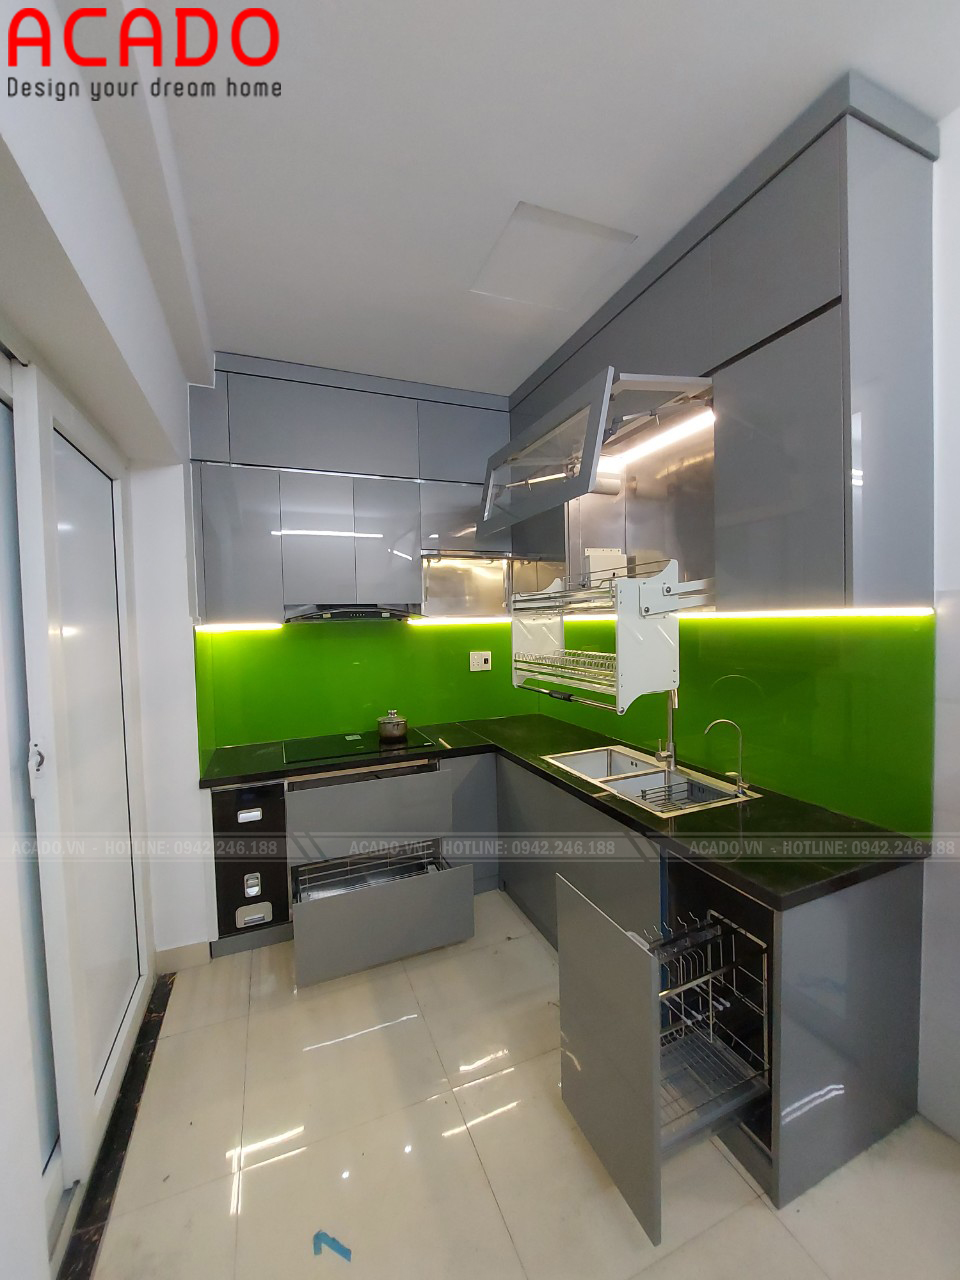 Tủ beeos sử duingj kính xanh kết hợp hệ thống đèn led tăng vẻ đẹp cho tủ bếp